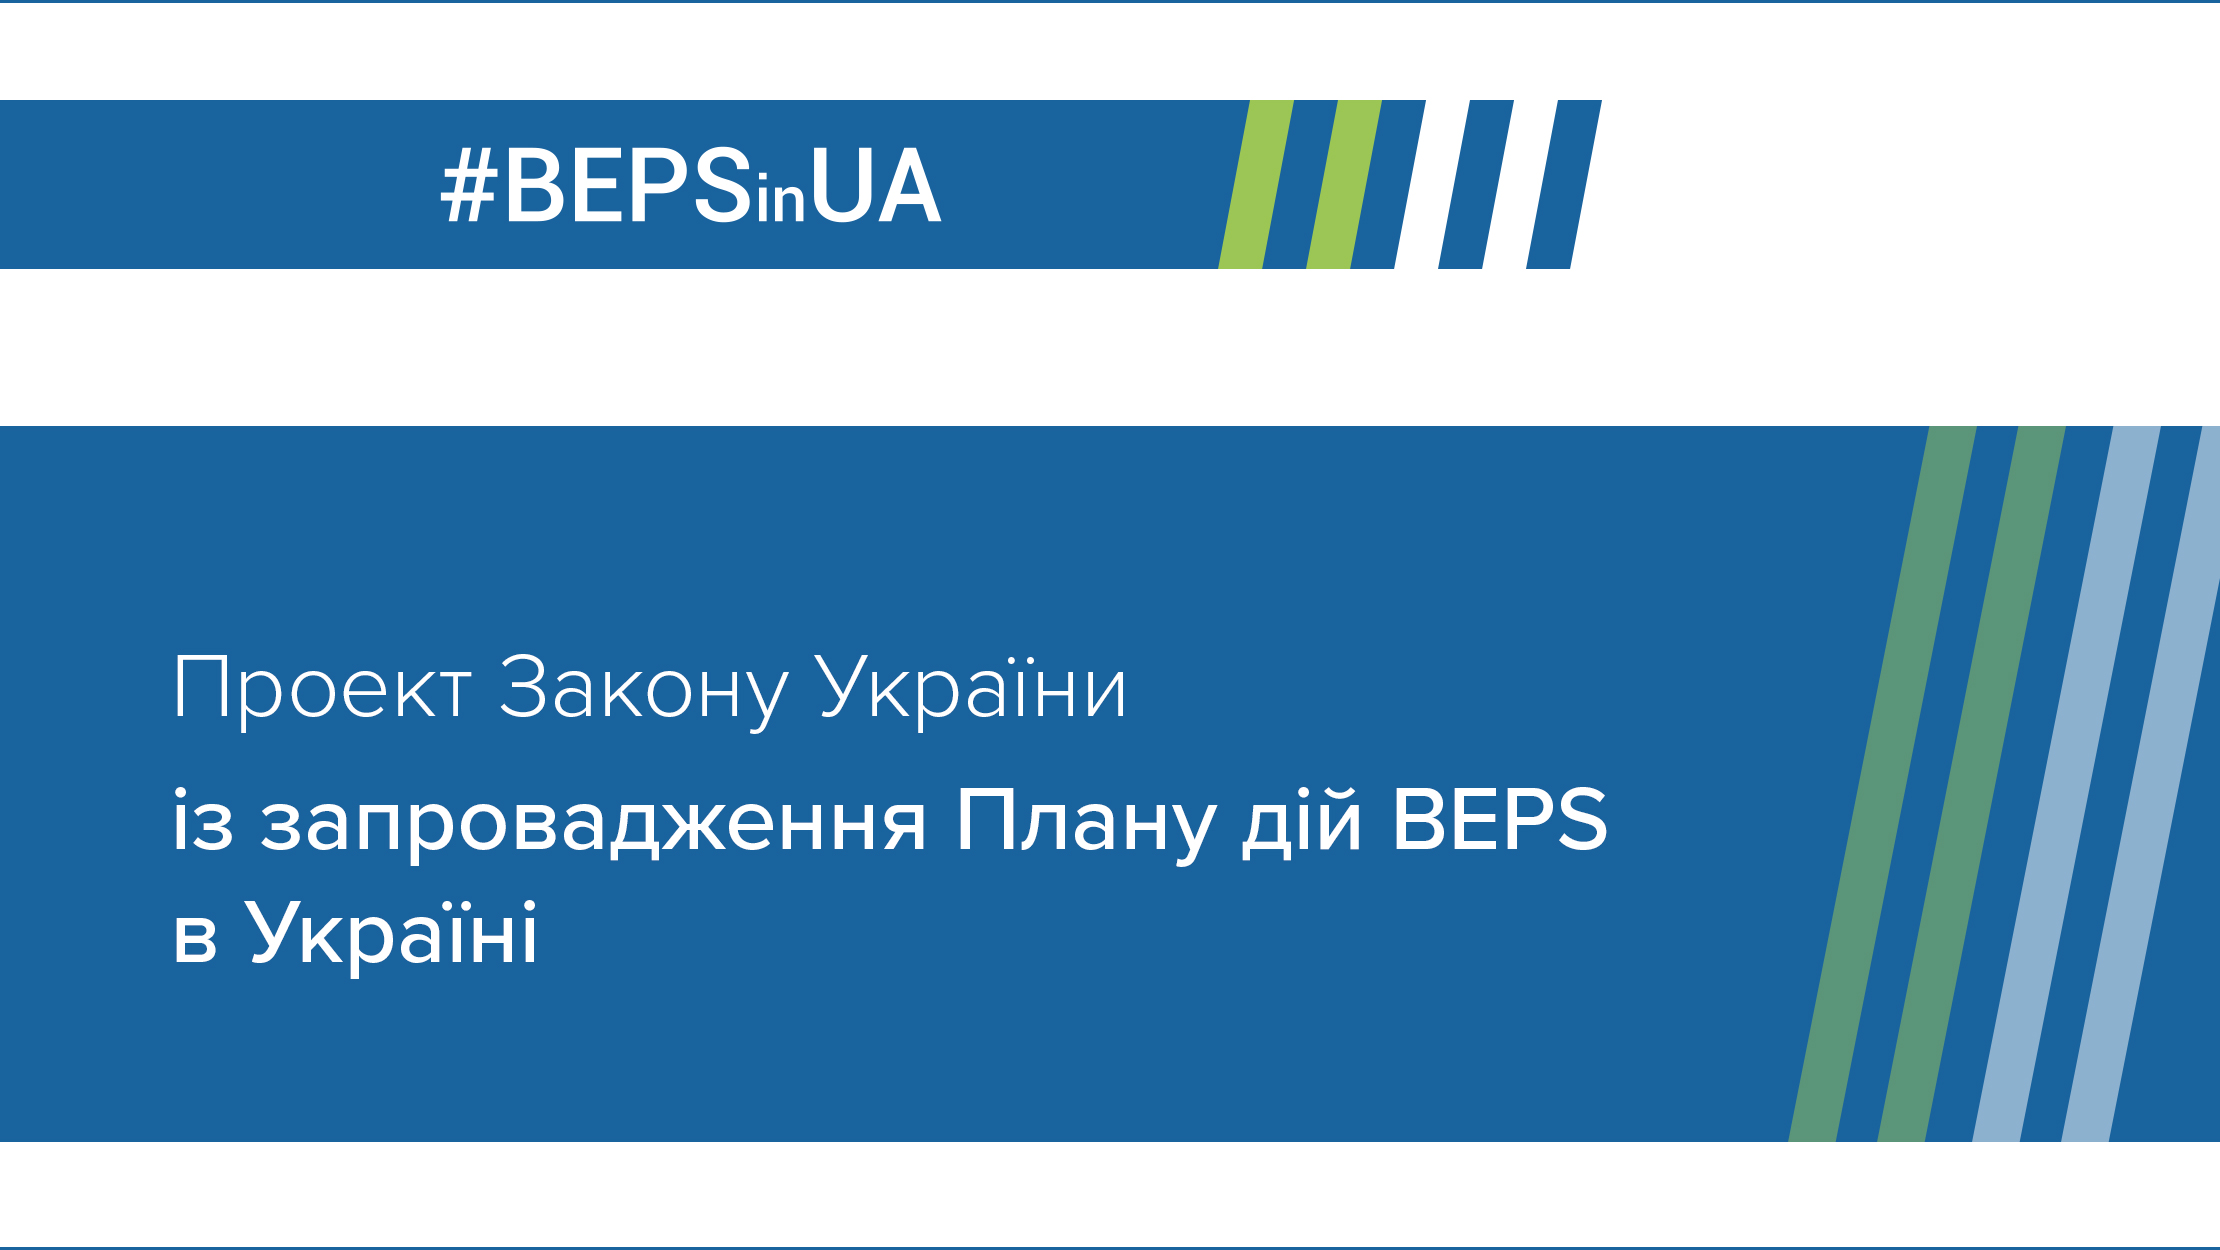 Міністерство фінансів та Національний банк оприлюднюють проект Закону із запровадження Плану дій BEPS в Україні